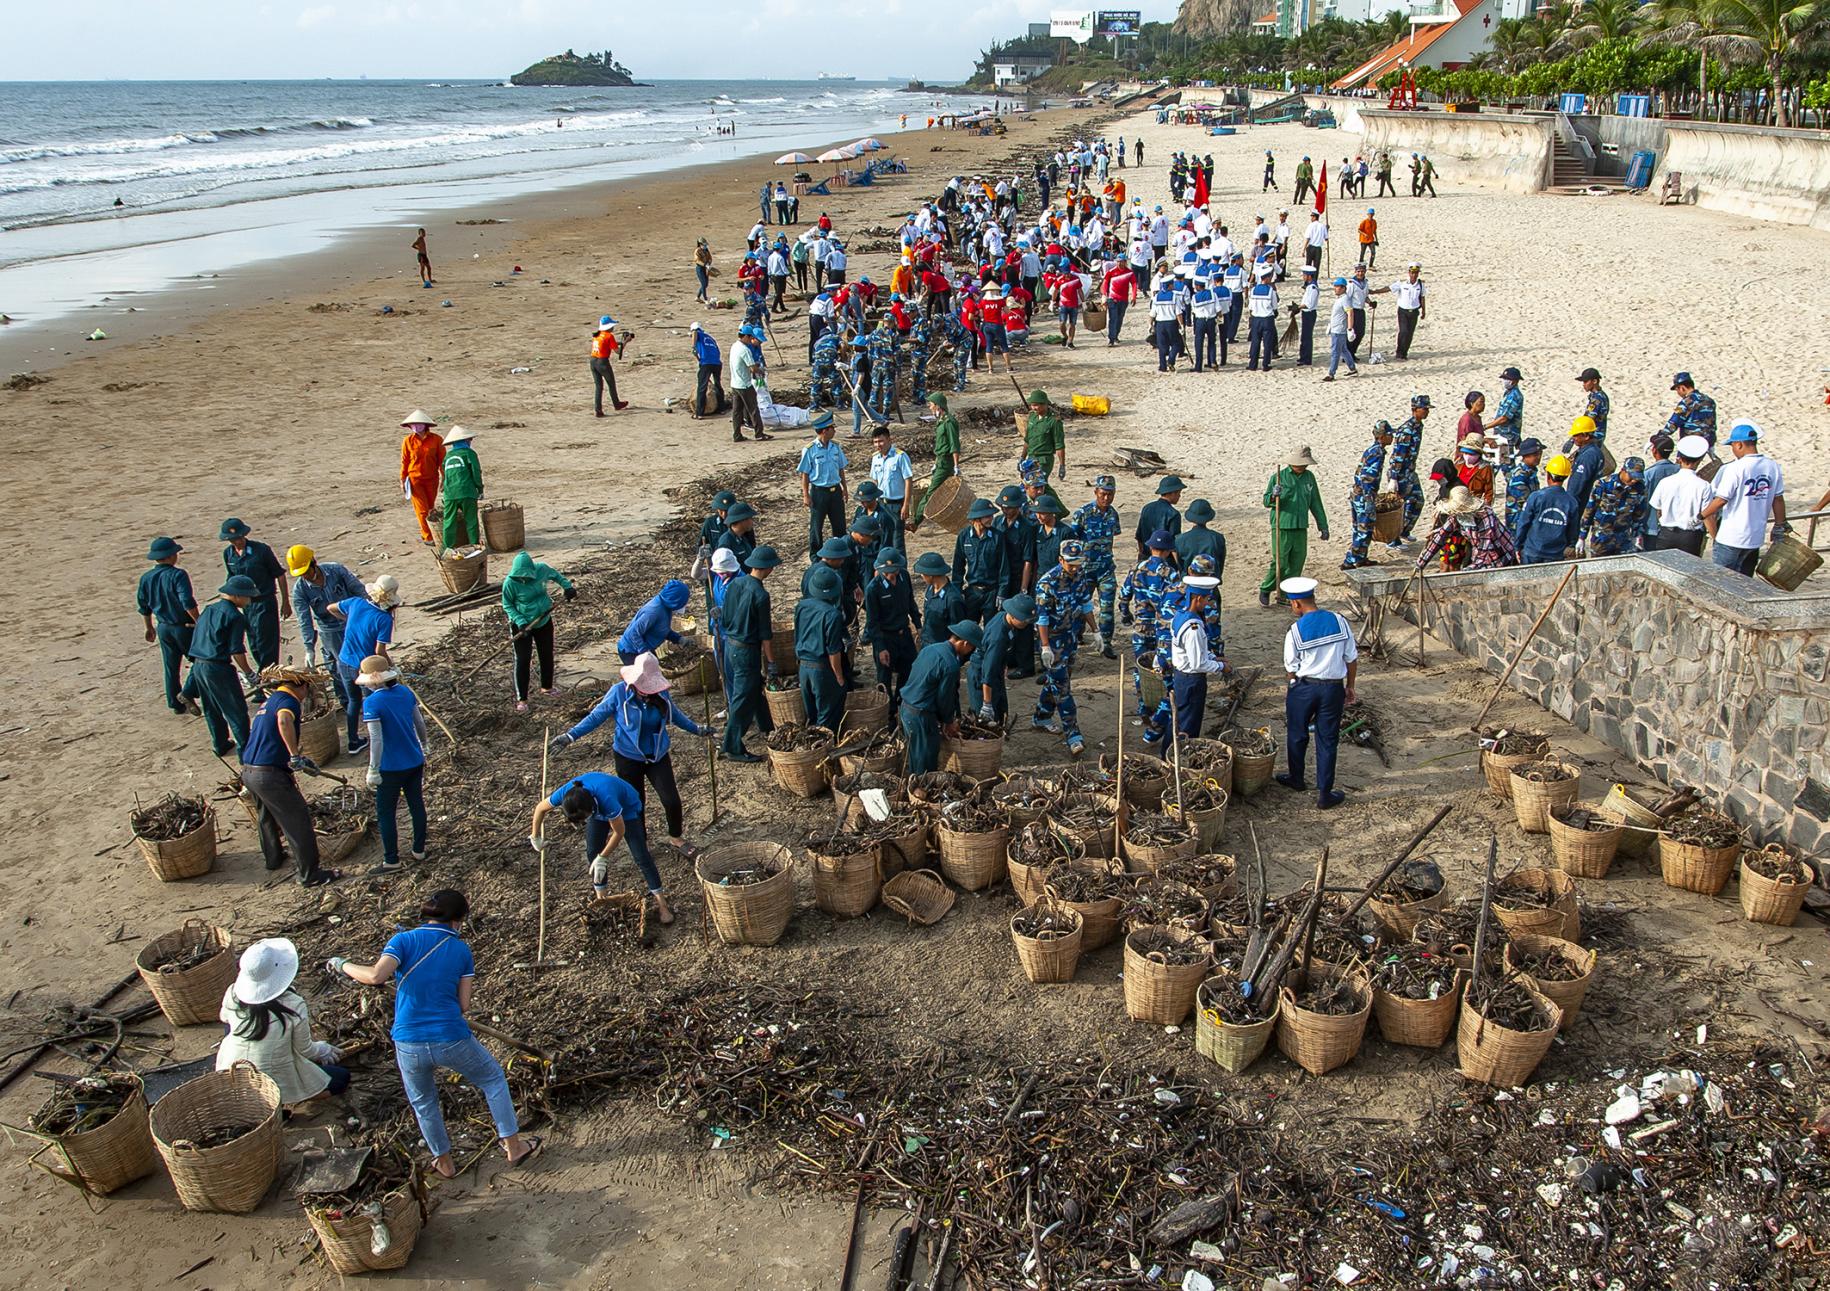 Las personas trabajan juntas para recoger la basura que llega flotando desde el mar.